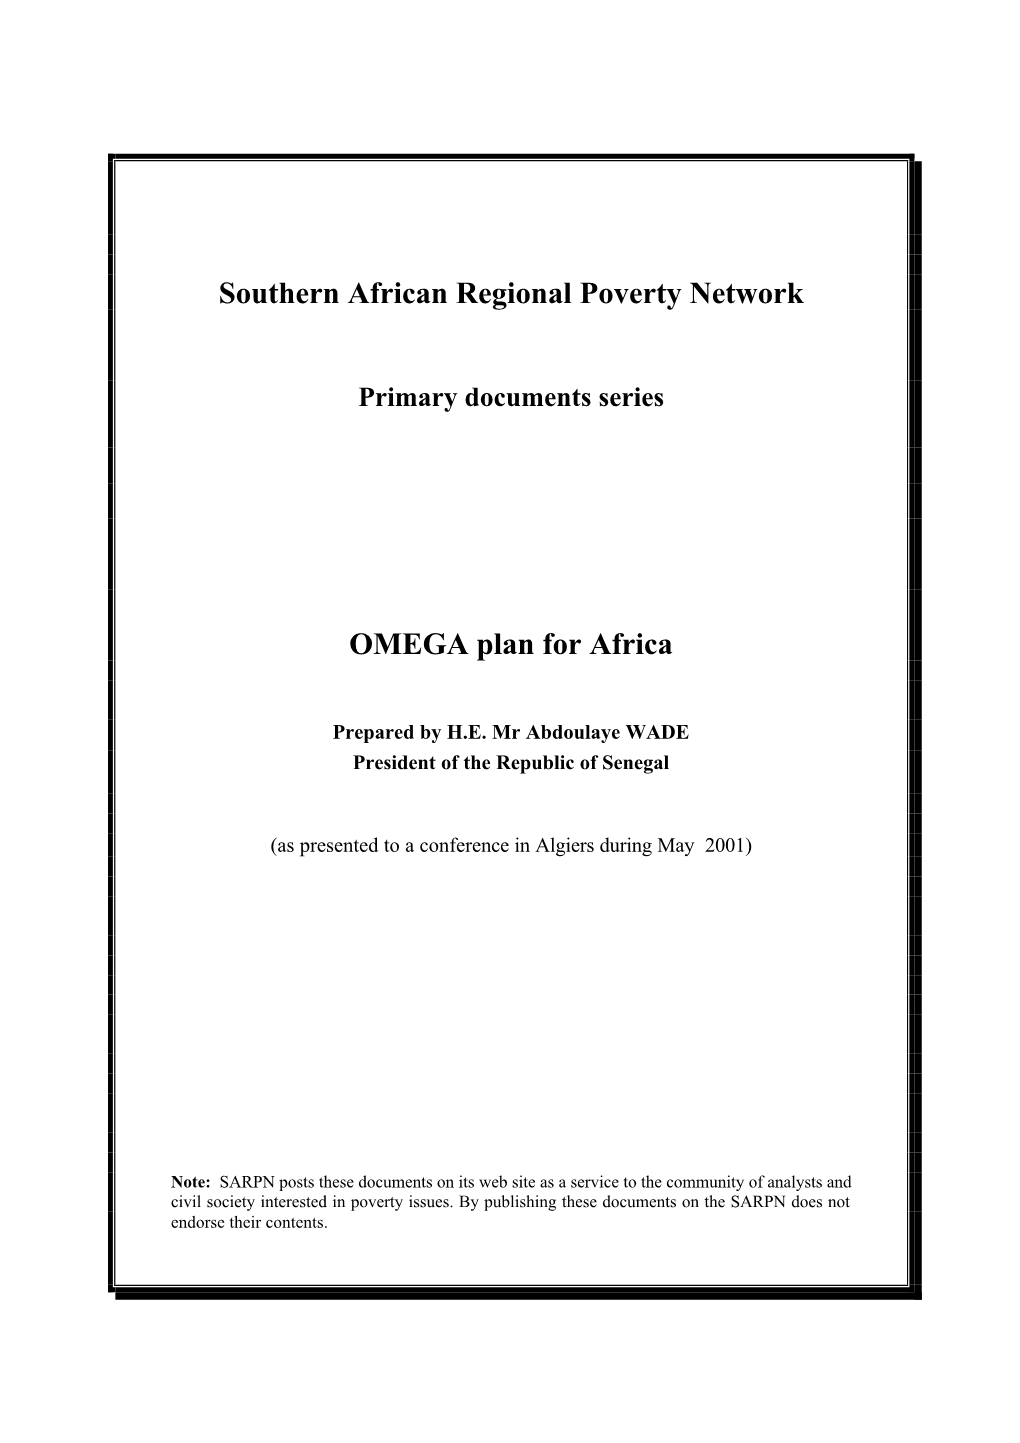 OMEGA Plan for Africa